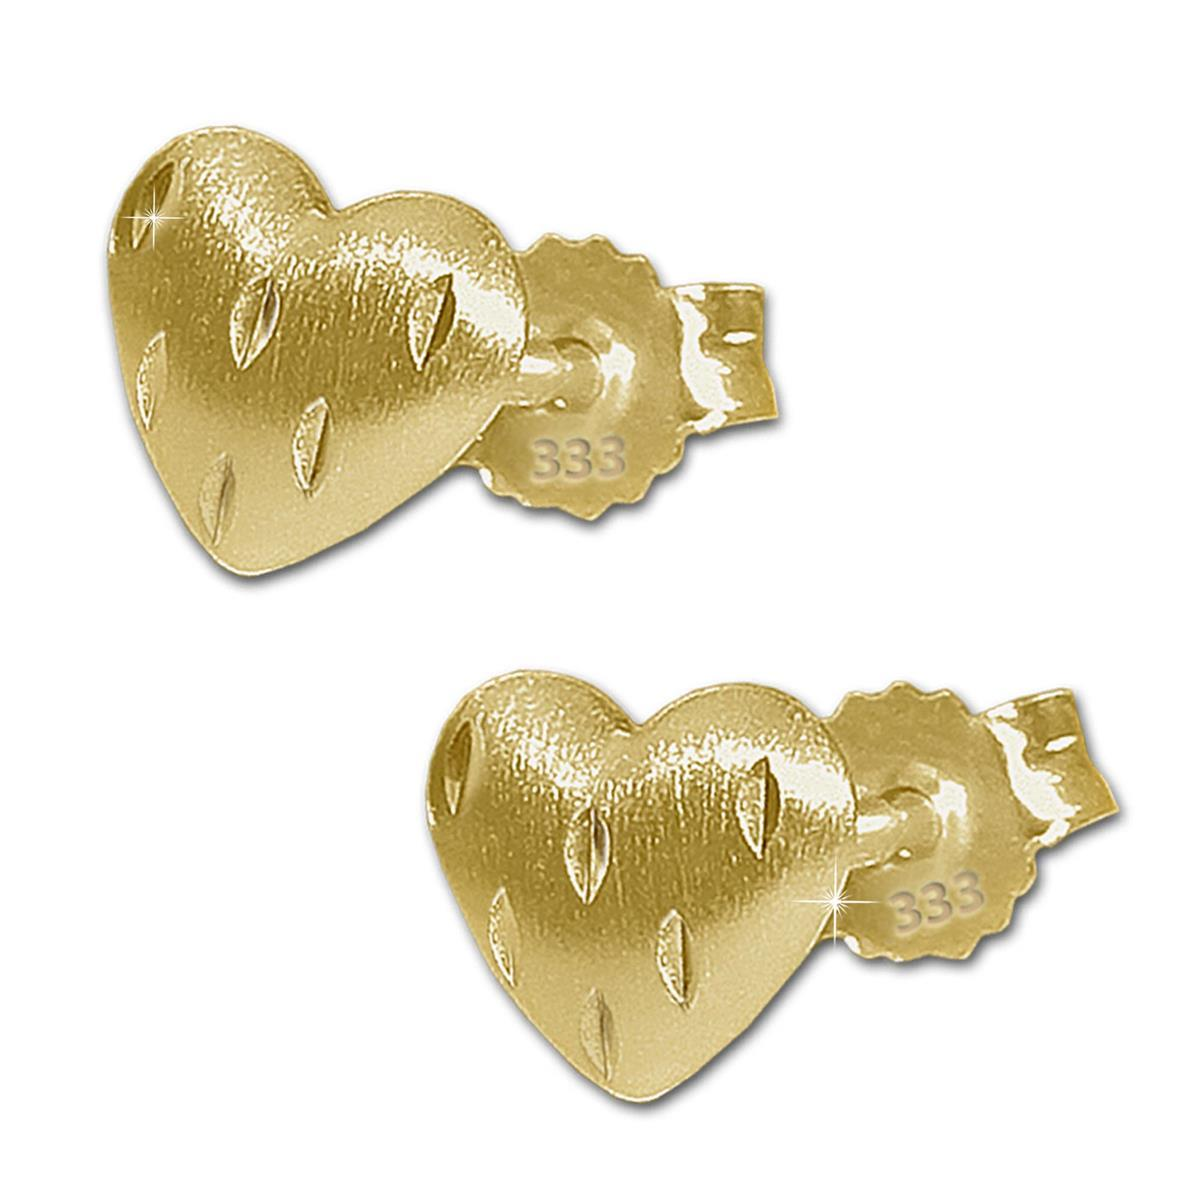 Goldene Ohrstecker Herz 5 mm gewölbt seidenmatt mit kleinen Linien diamantiert 333 GOLD 8 KARAT